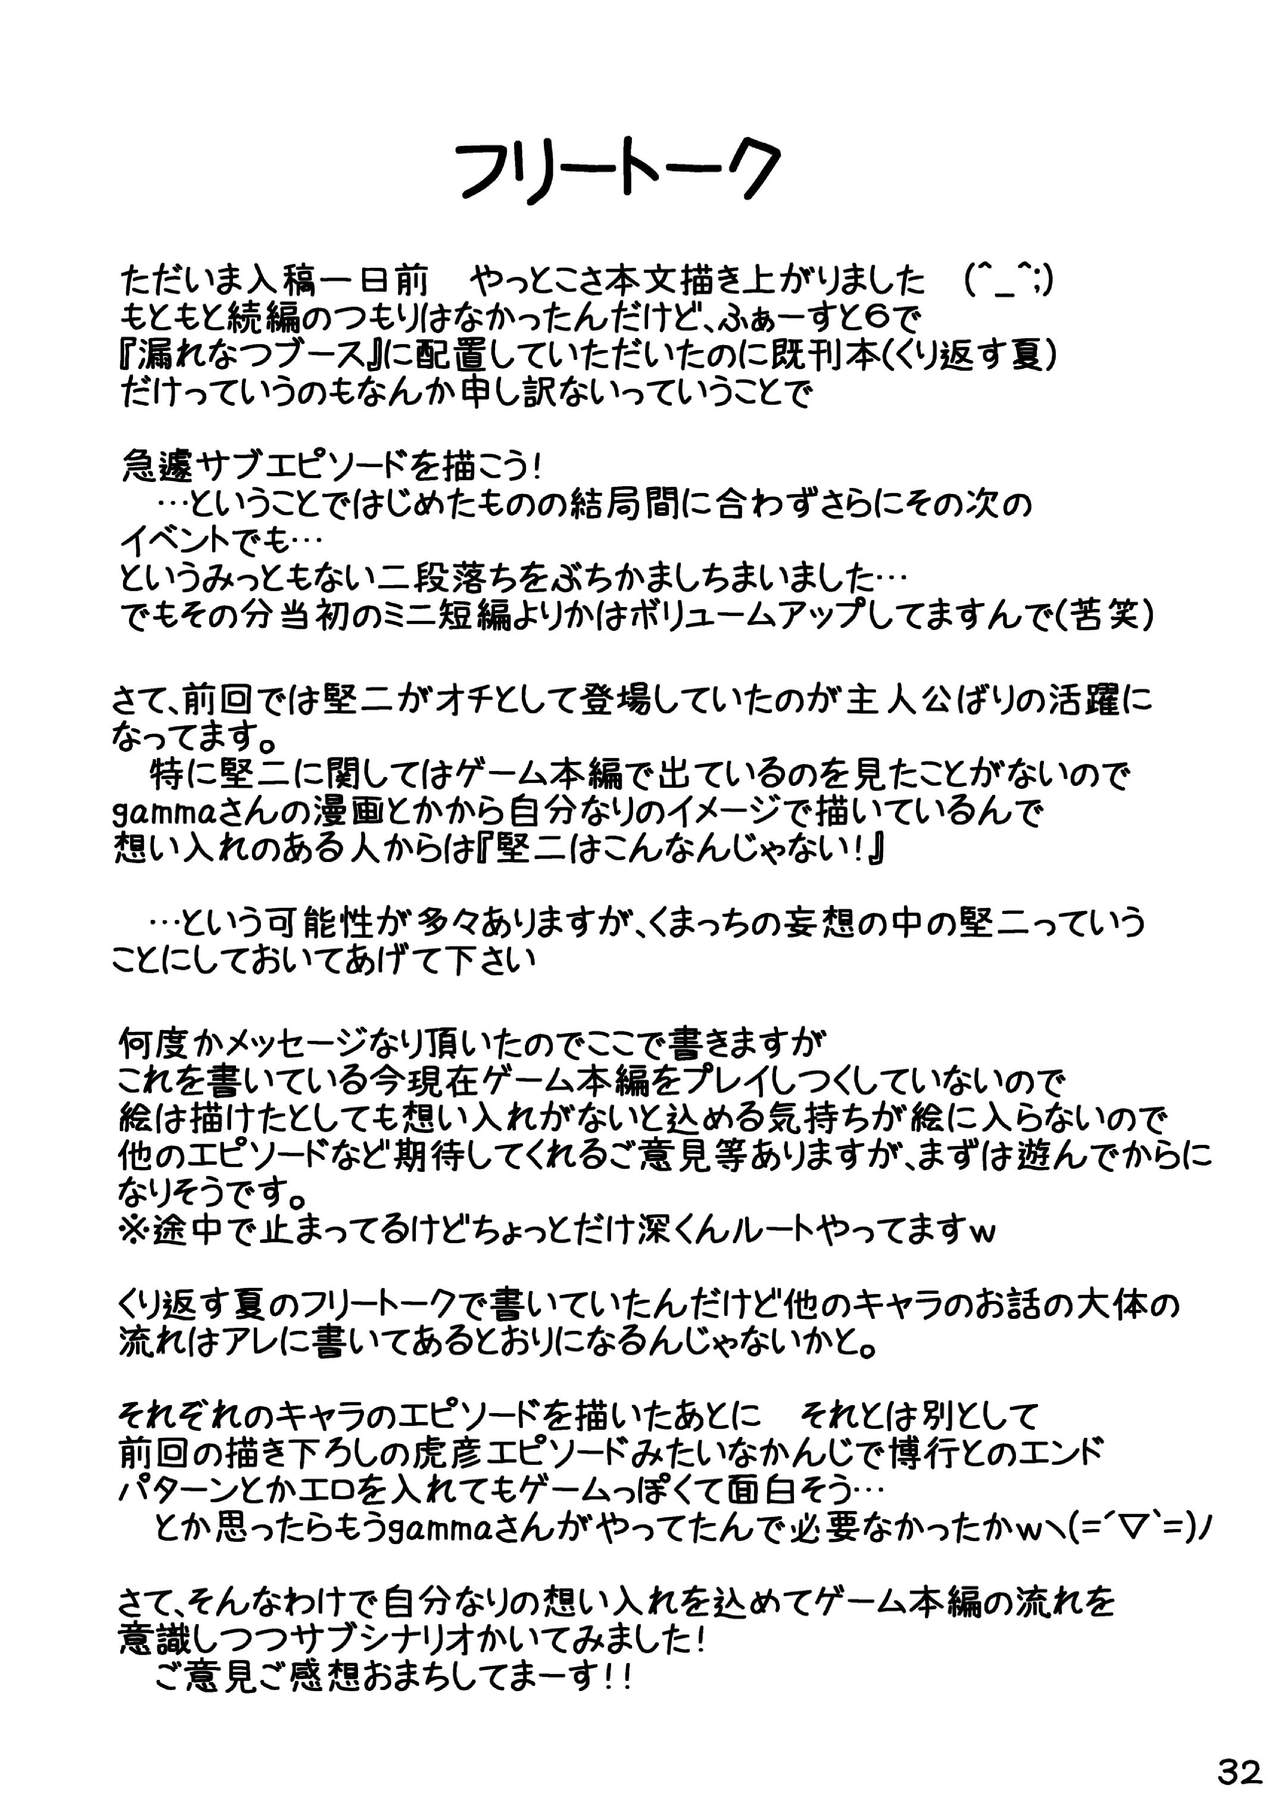 [Damin Tou (Kumacchi)] “Kurikaesu Natsu” Bunki Episode Sono 1 Juuichi & Kenji-hen “Gaki no Koro no Kioku” (Morenatsu) [Digital] [惰眠党 (くまっち)] 『くり返す夏』 分岐エピソードその1 柔一&堅二編 『ガキの頃の記憶』 (漏れなつ。) [DL版]